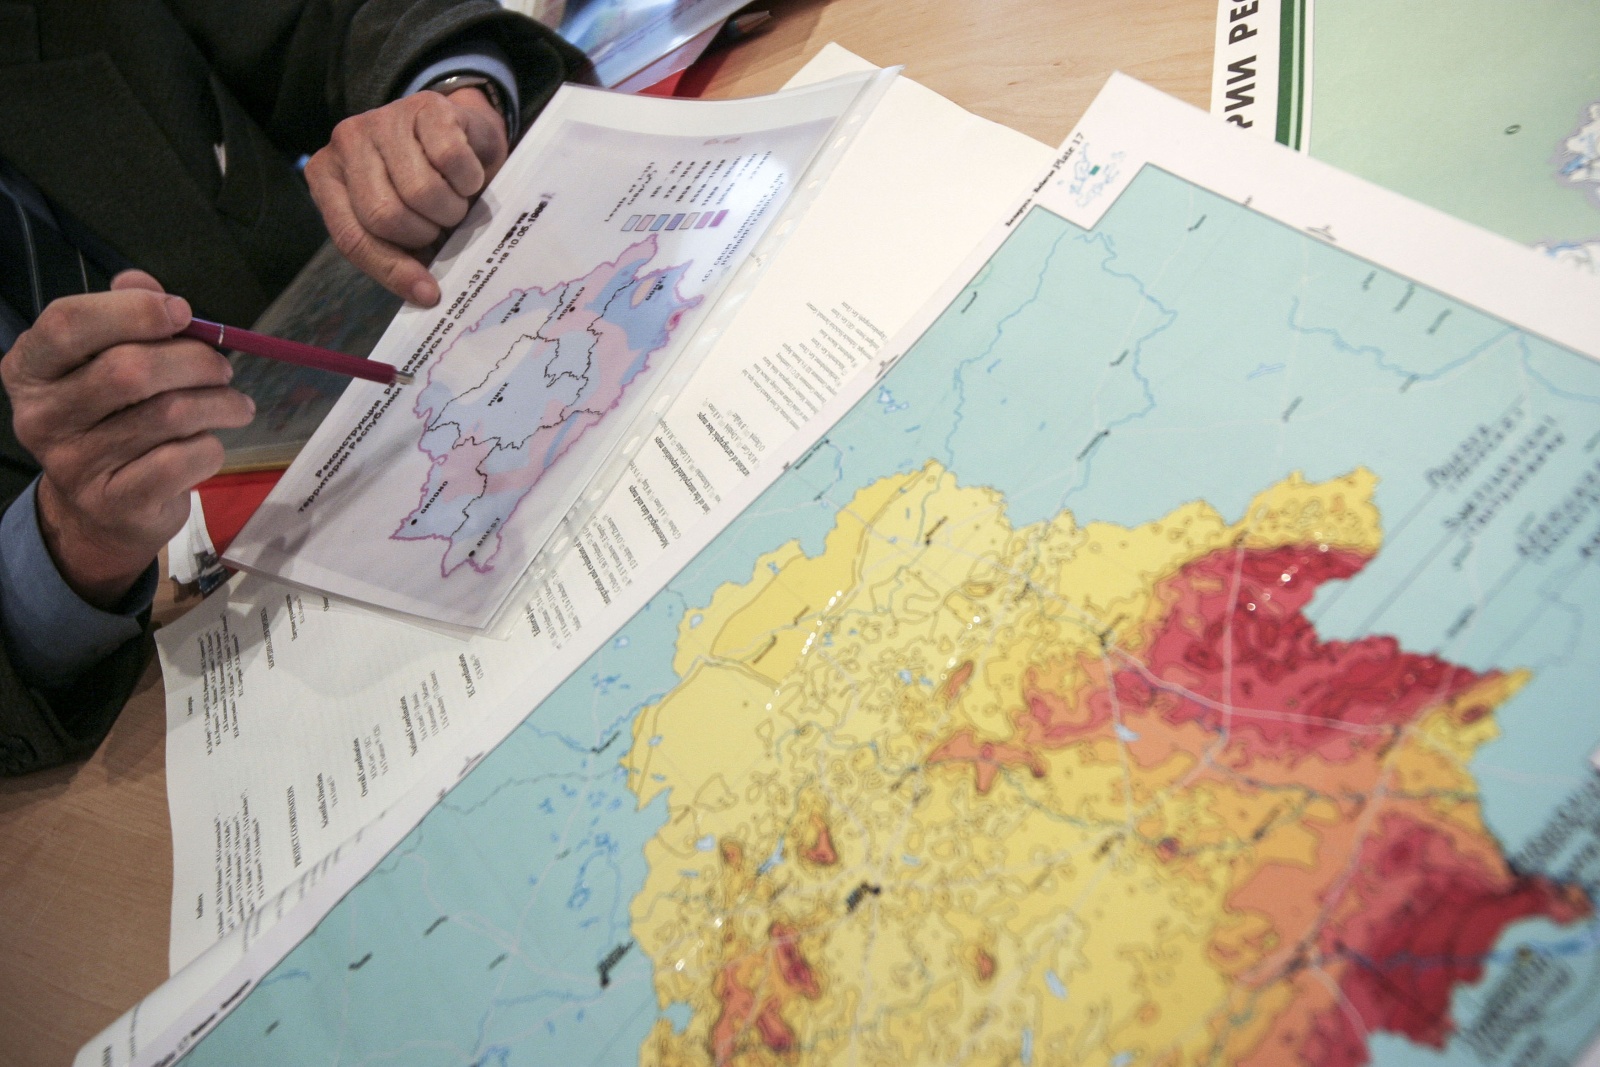 Bielorussia, Minsk, Istituto Belrad, mappa con le zone radioattive dal cesio